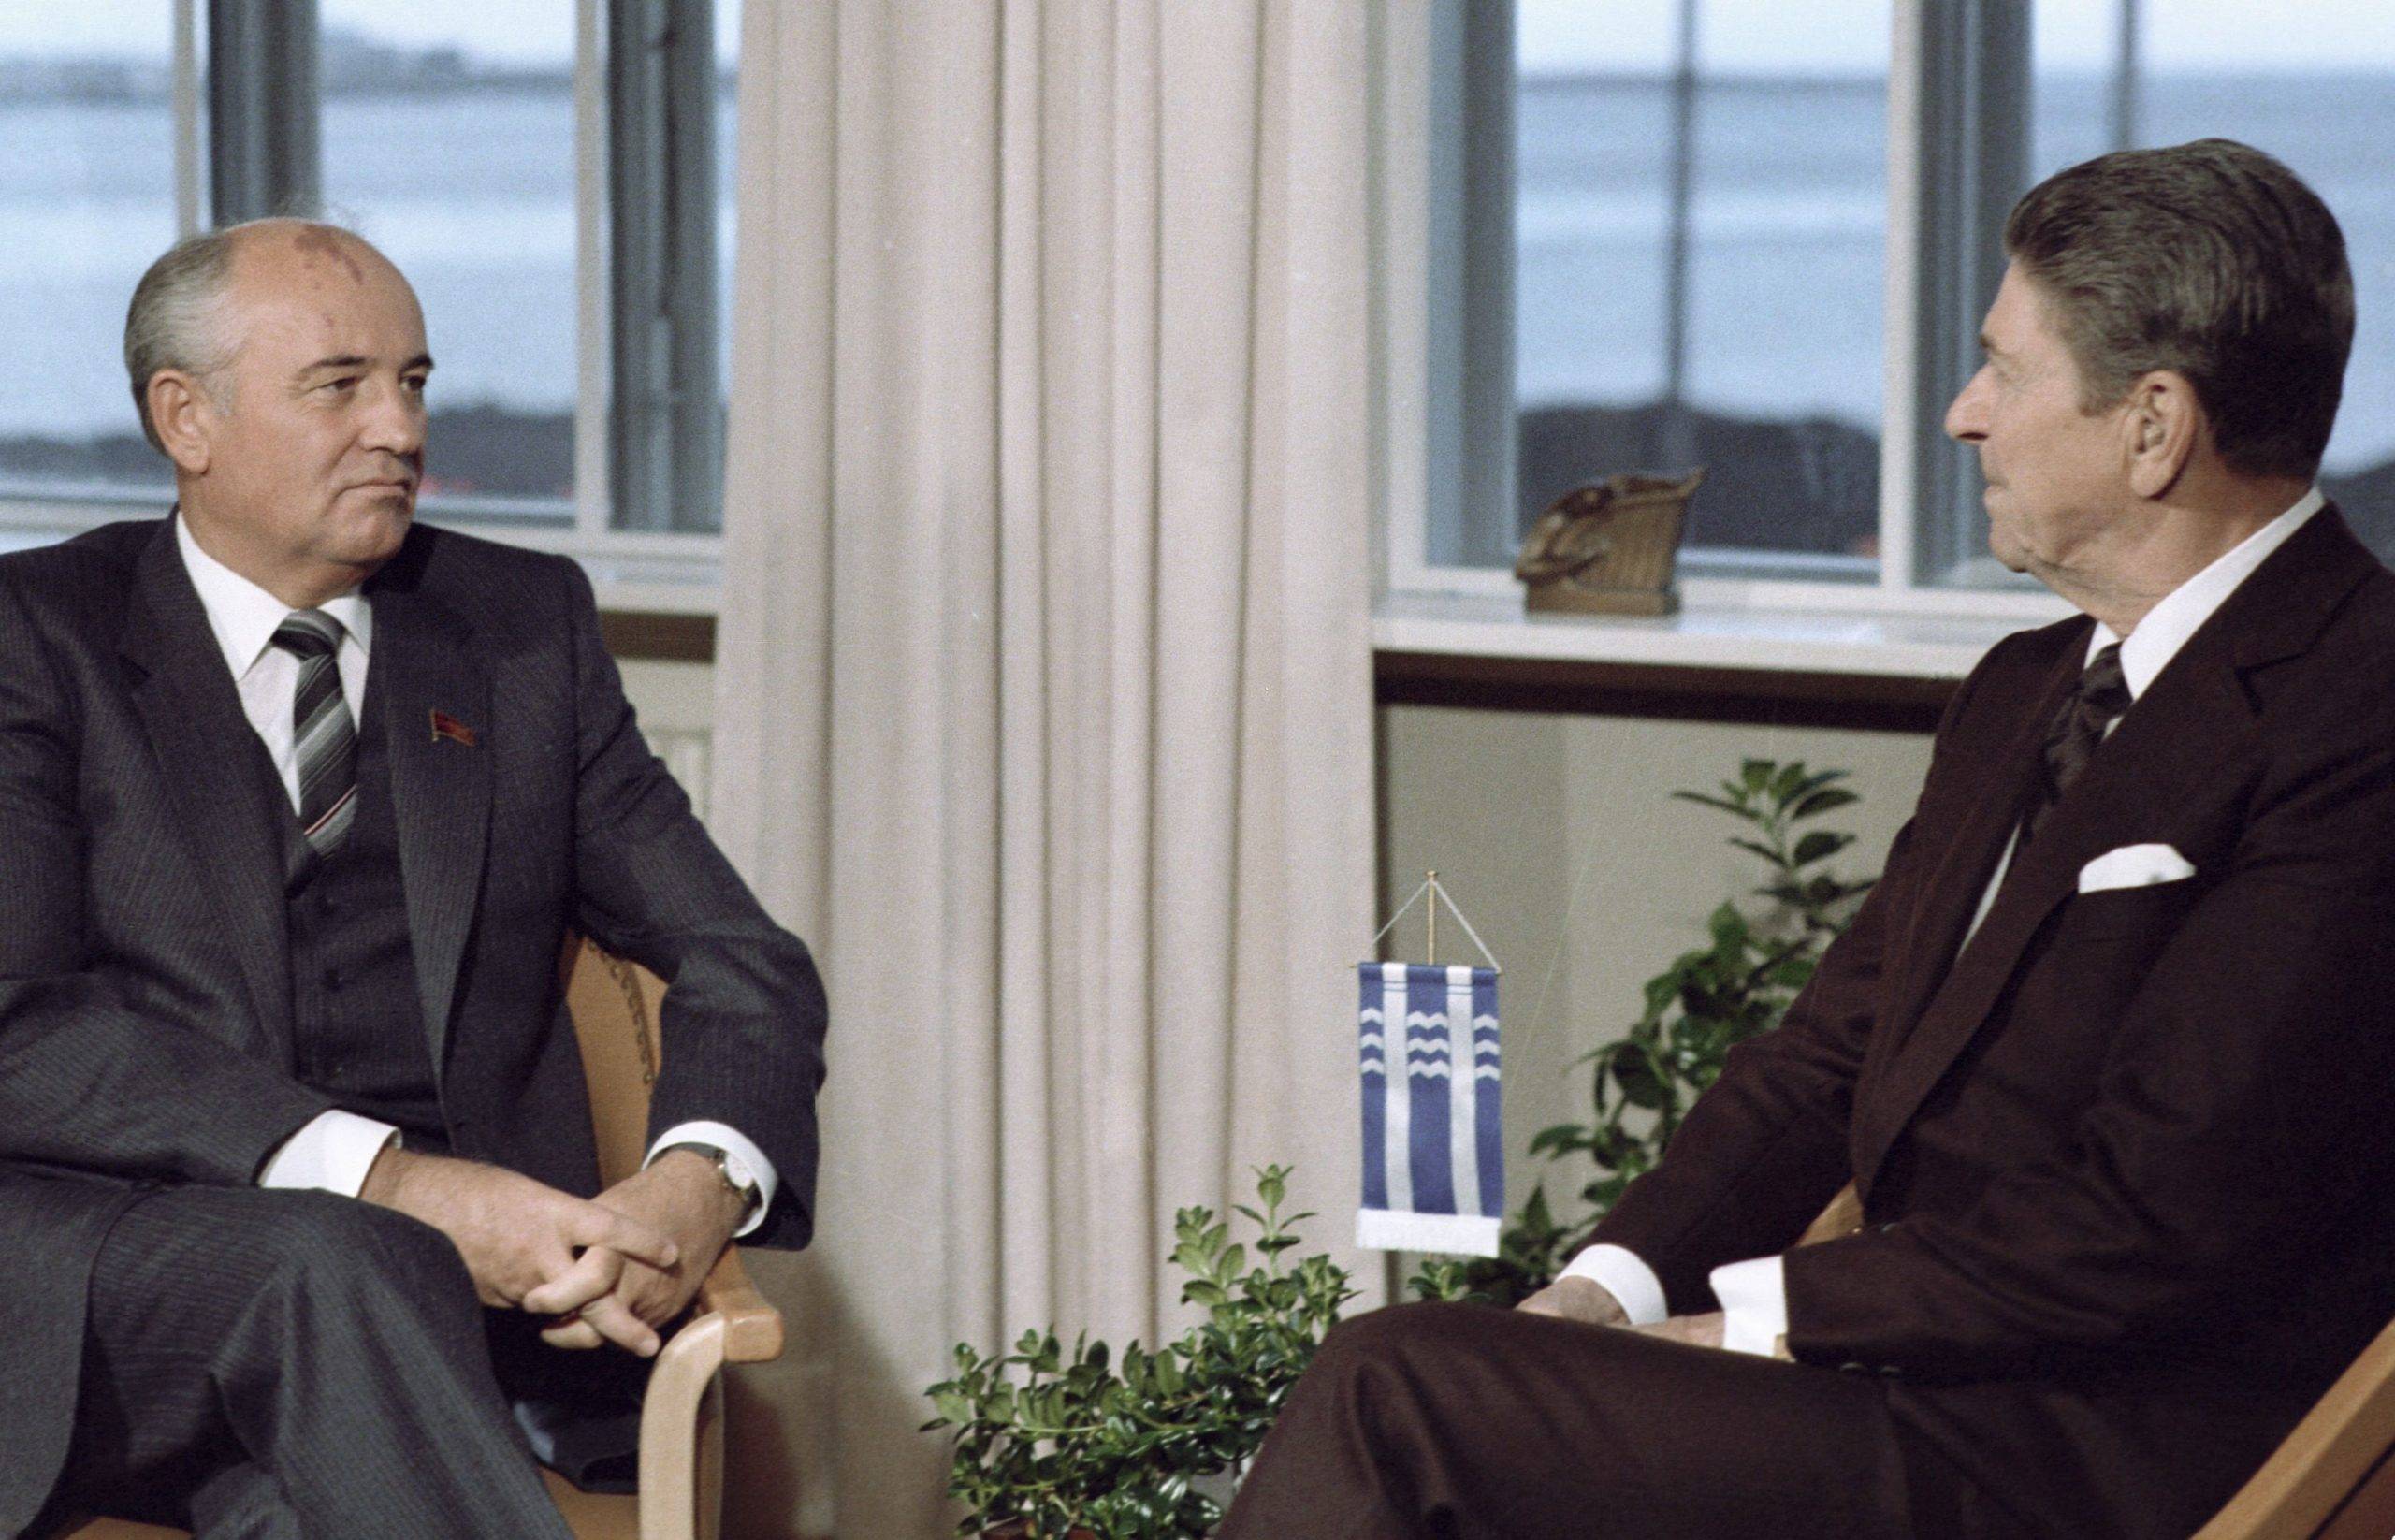 Mikhail Gorbachev and President Ronald Reagan during their summit meeting in Reykjavik (1986). Yuryi Abramochkin / Sputnik//SPUTNIK_1.1343/2102201206/Credit:Yuryi Abramochkin/SPUTNIK/SIPA/2102201206